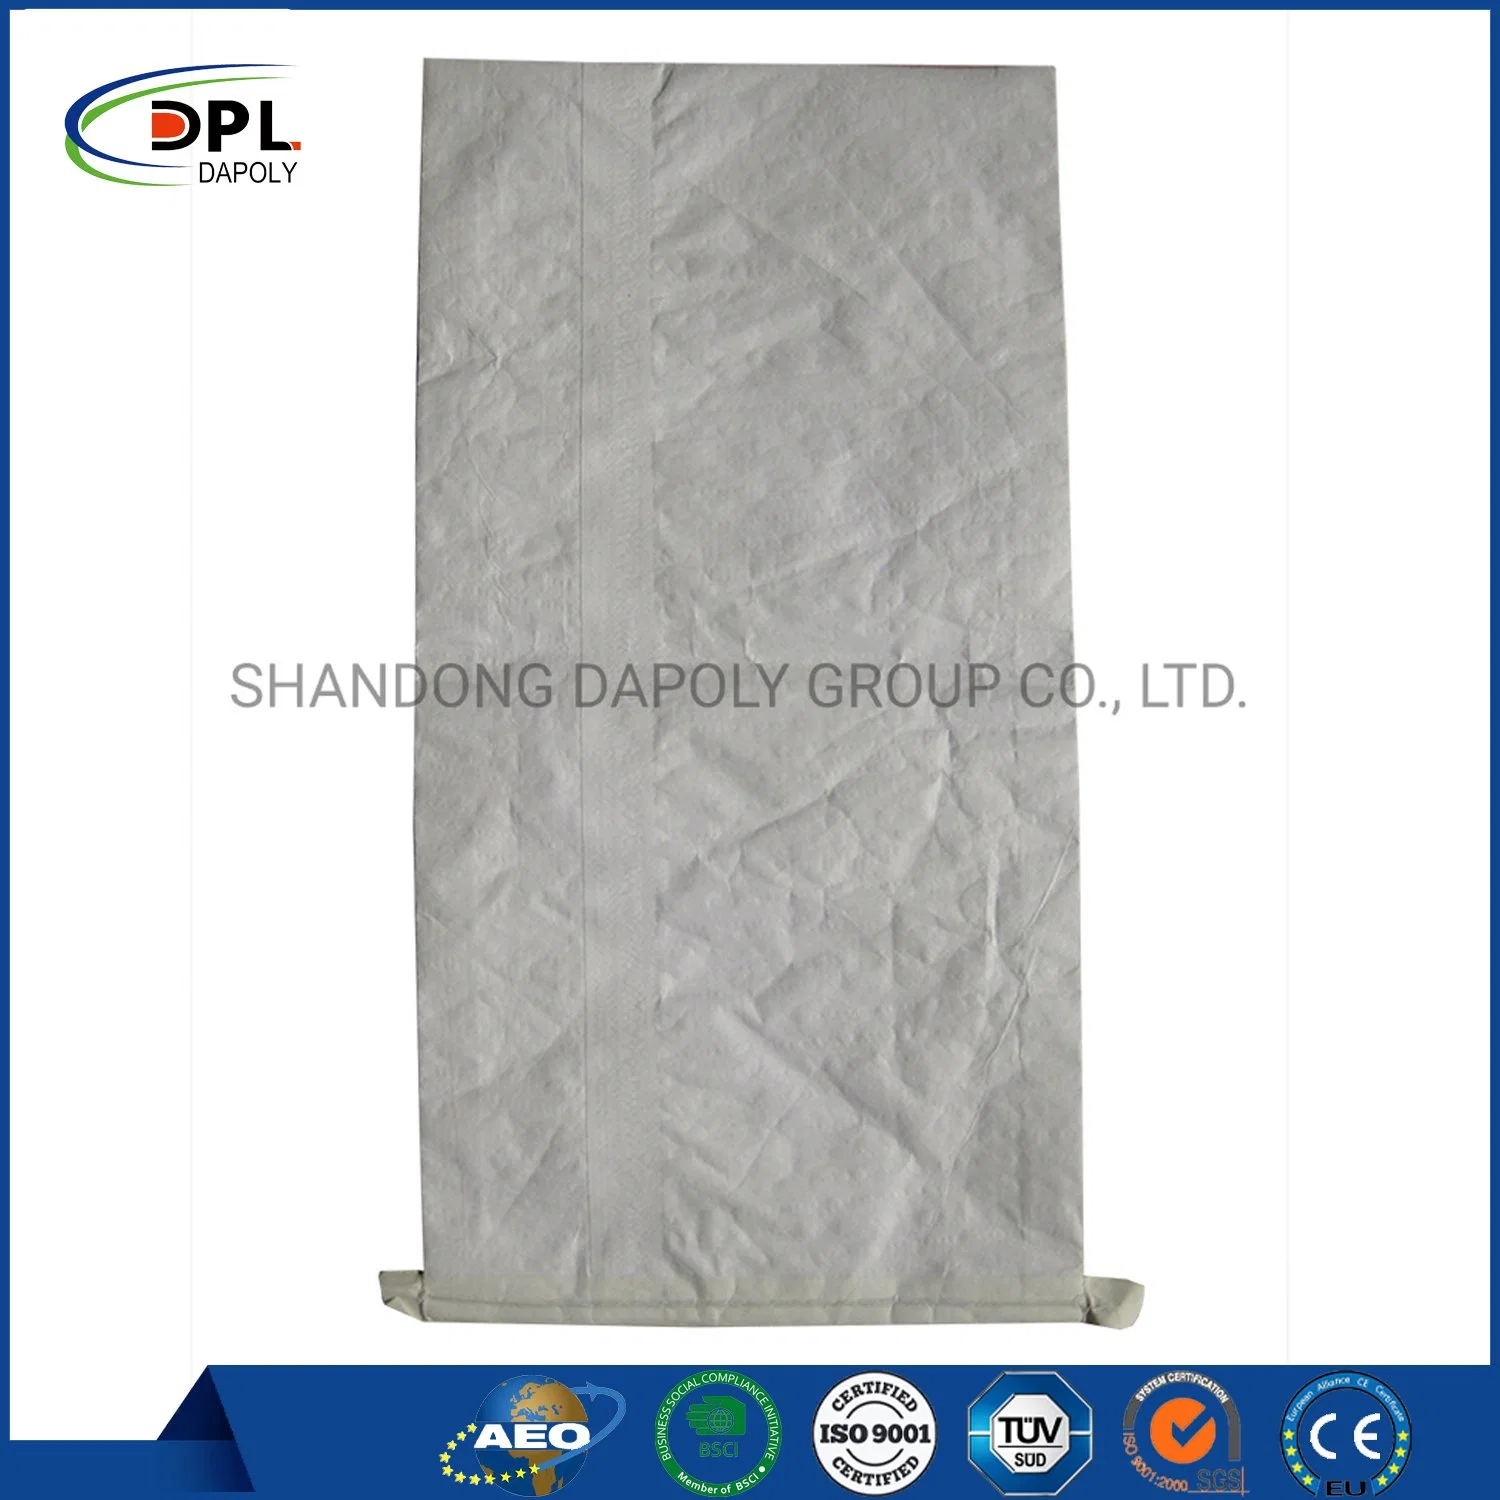 20kg 25kg 40kg 50kg Dry Mortar Cement Bag Multiwall Kraft Paper Tile Adhesive Valve Bag Plaster Mortar Putty Powder Paper Sack Sale